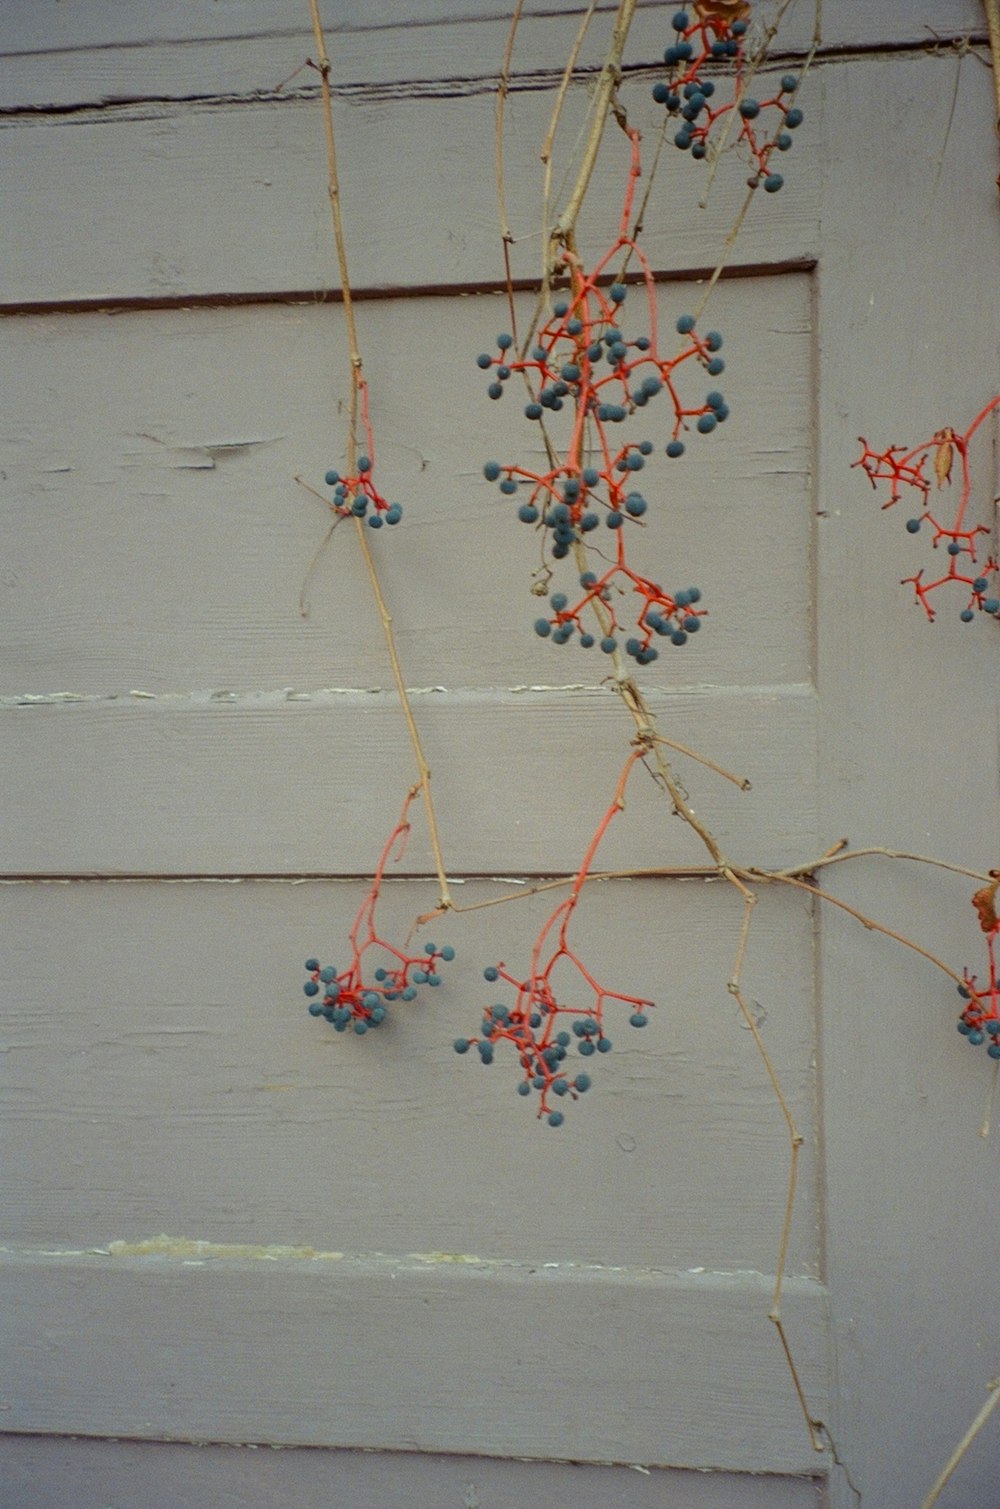 a bunch of berries hanging from a door